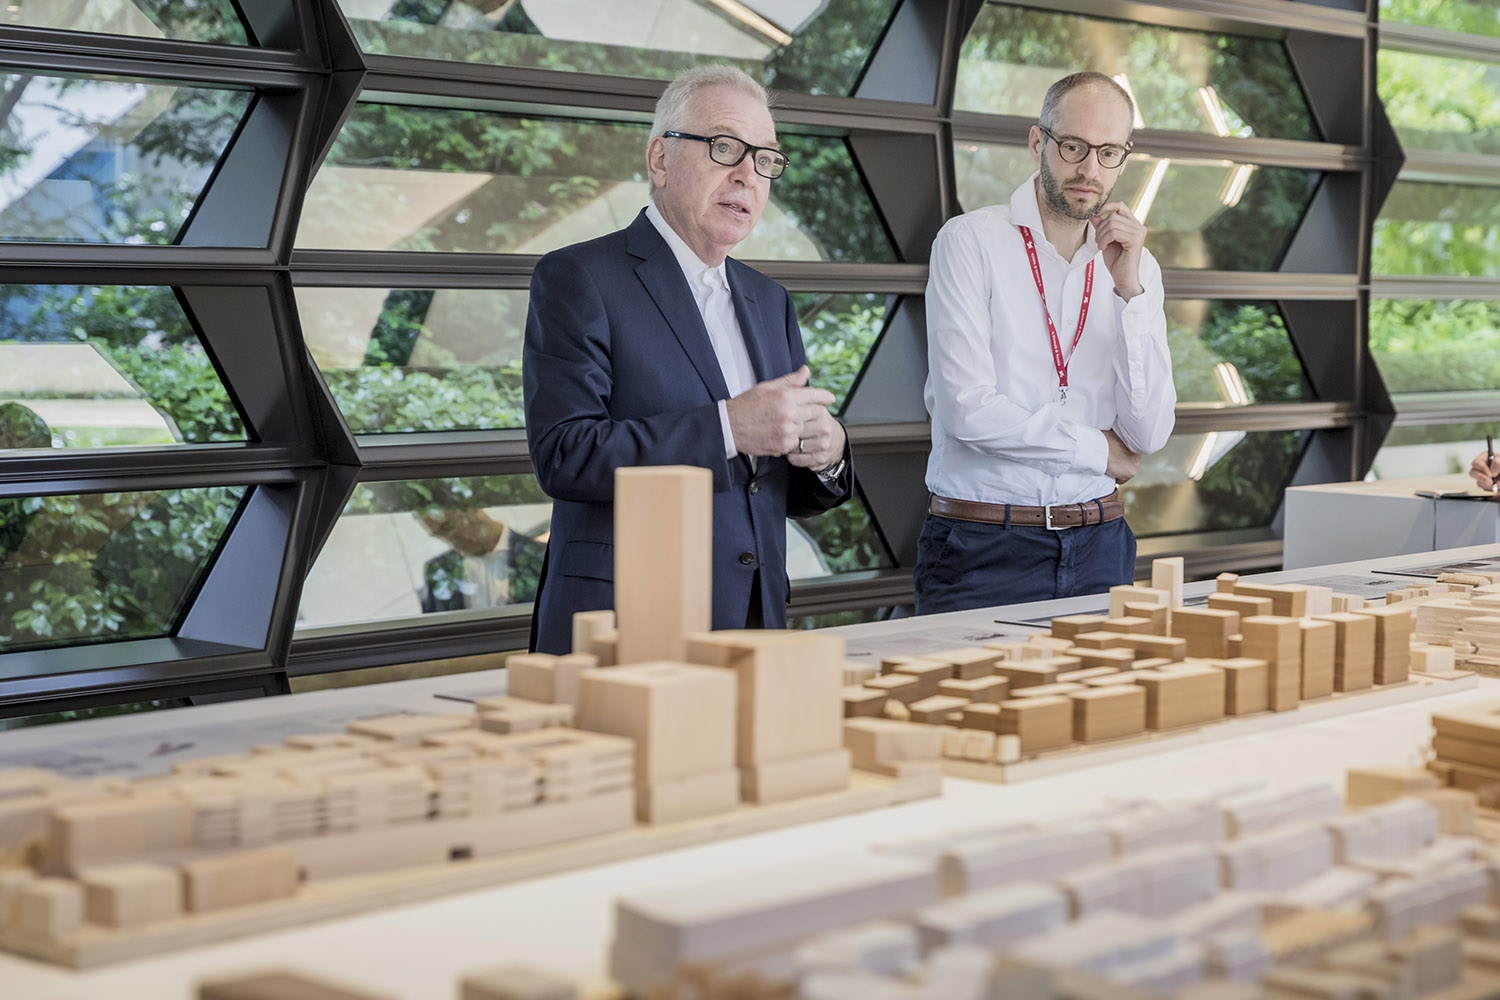 Los arquitectos David Chipperfield y Simon Kretz explicando el proyecto de reflexión sobre el futuro de la ciudad, desarrollado en el marco de la iniciativa Mentor & Protégé Arts.